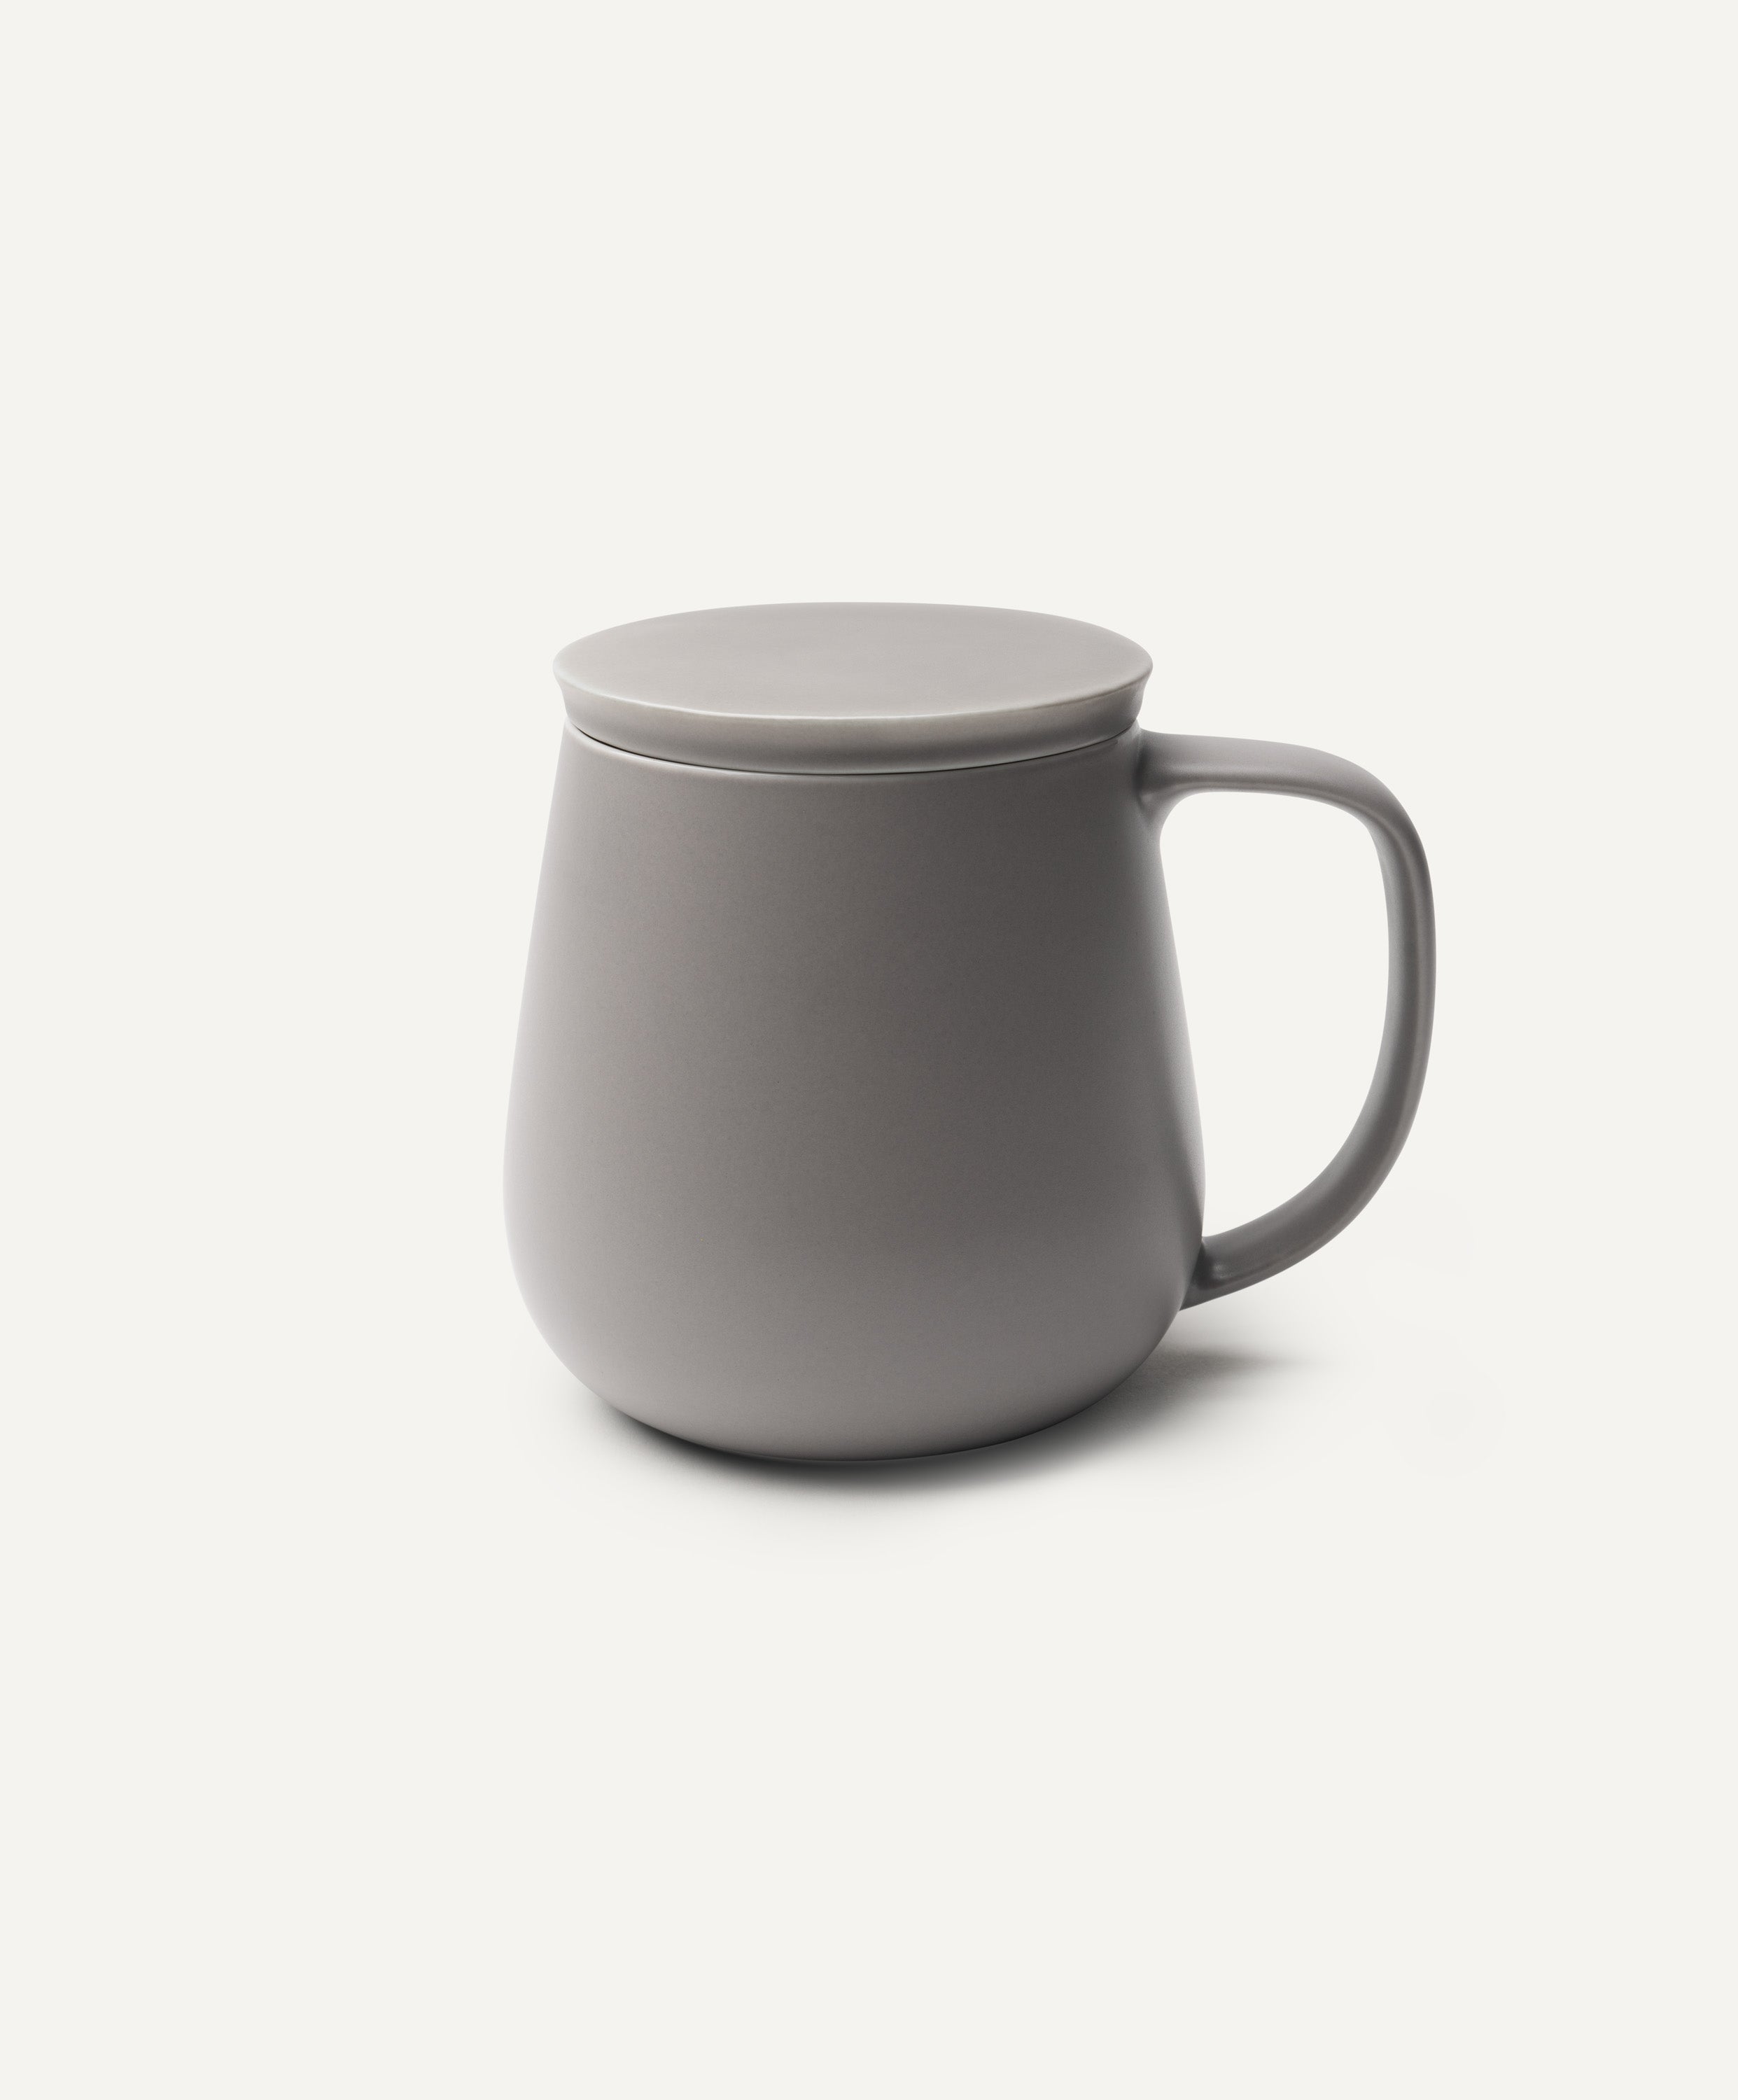 Ui+ Self-heating Mug - Mug Only